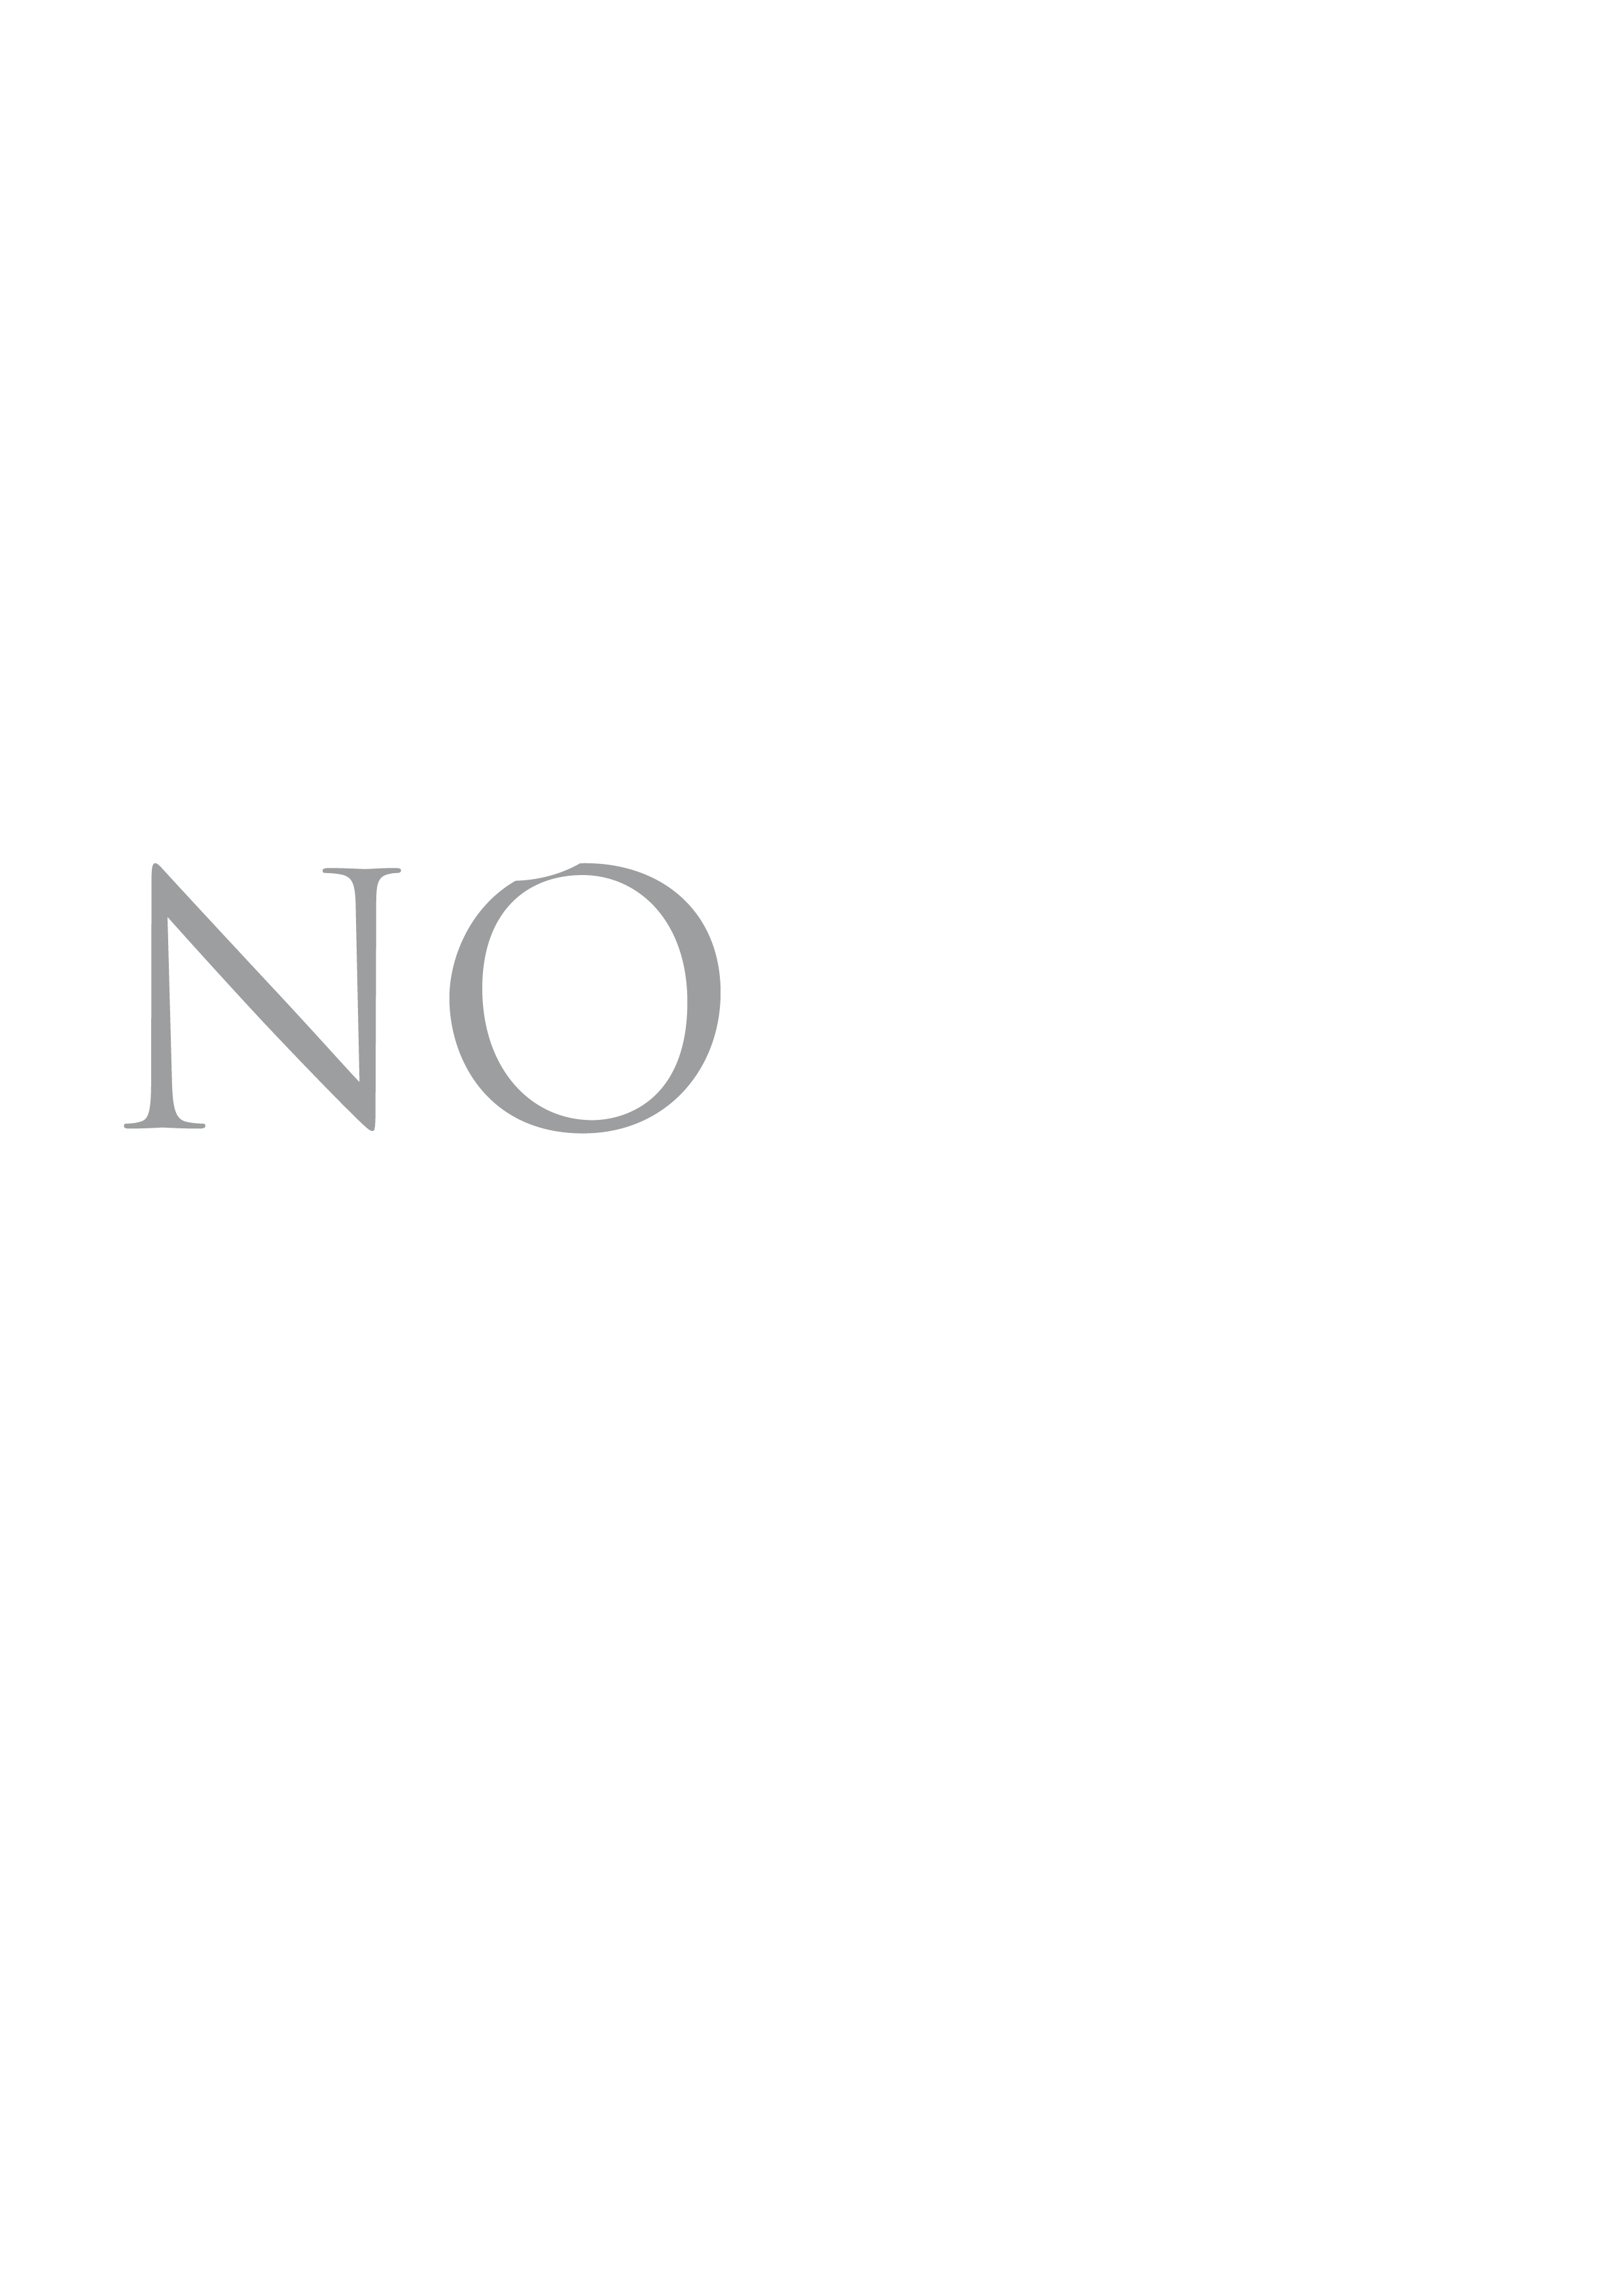 Graphic design Tobenotobe